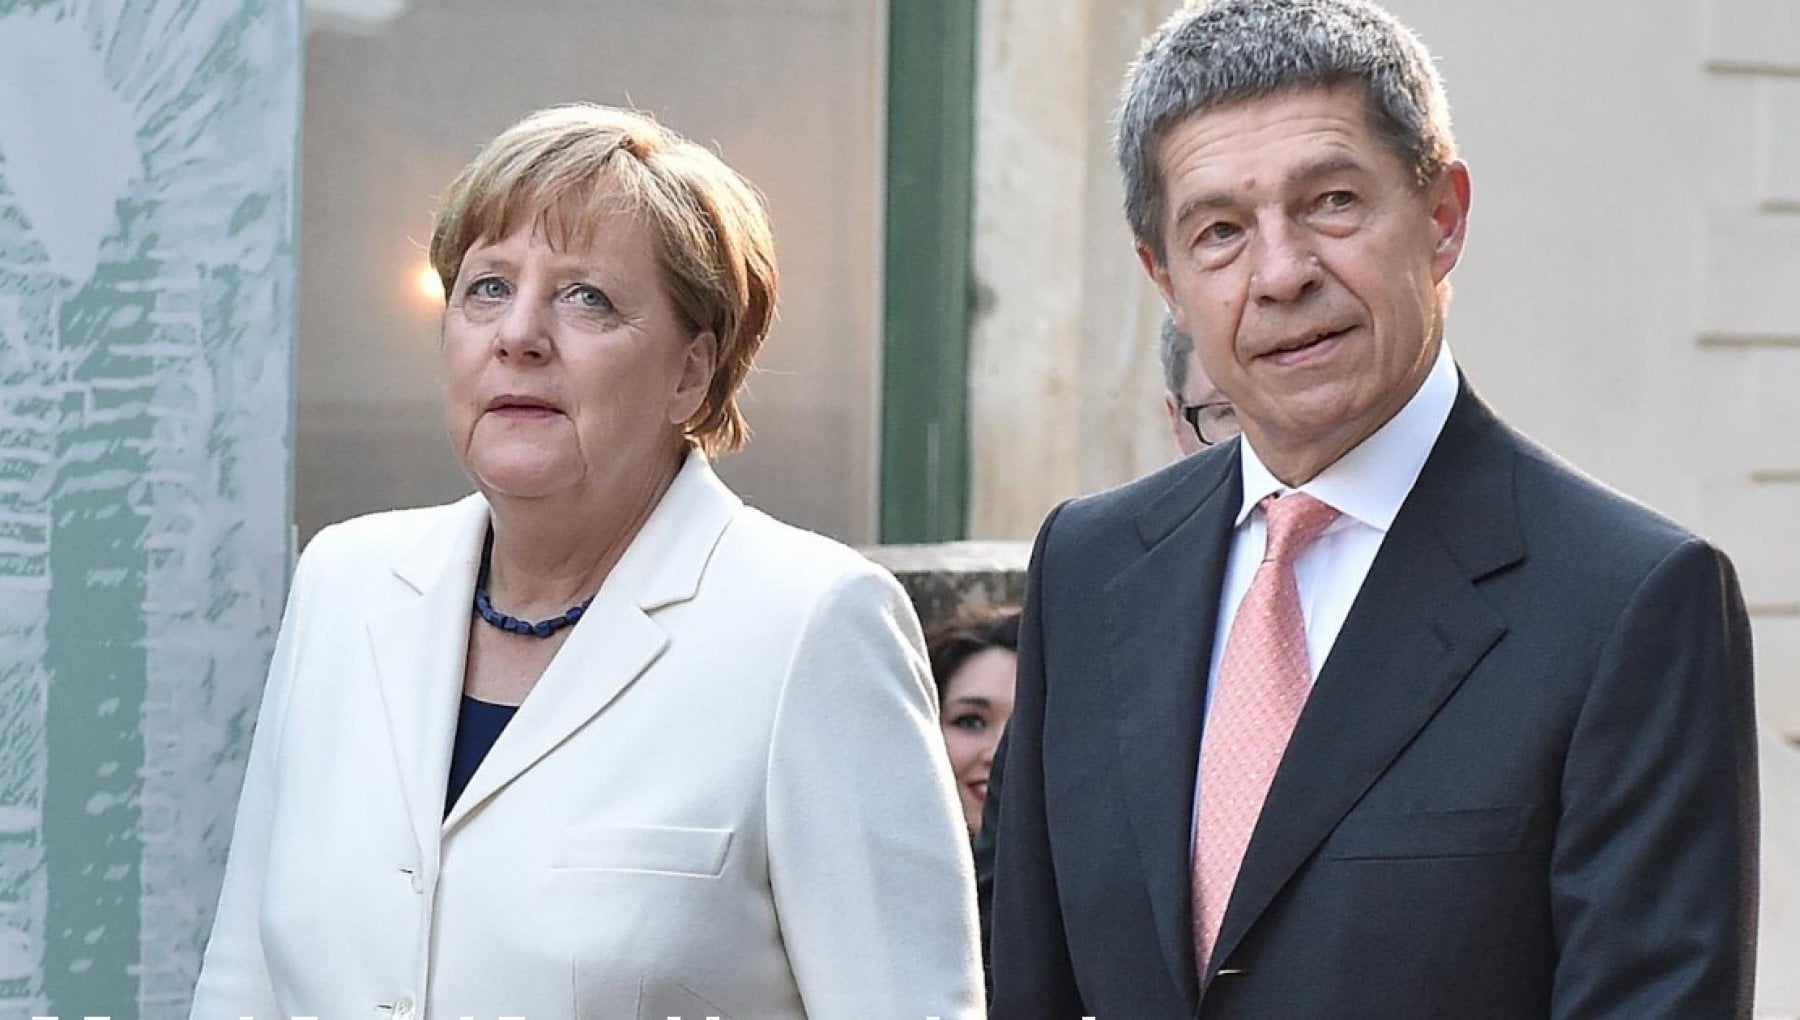 Il marito della Merkel è duro con i No-vax: 